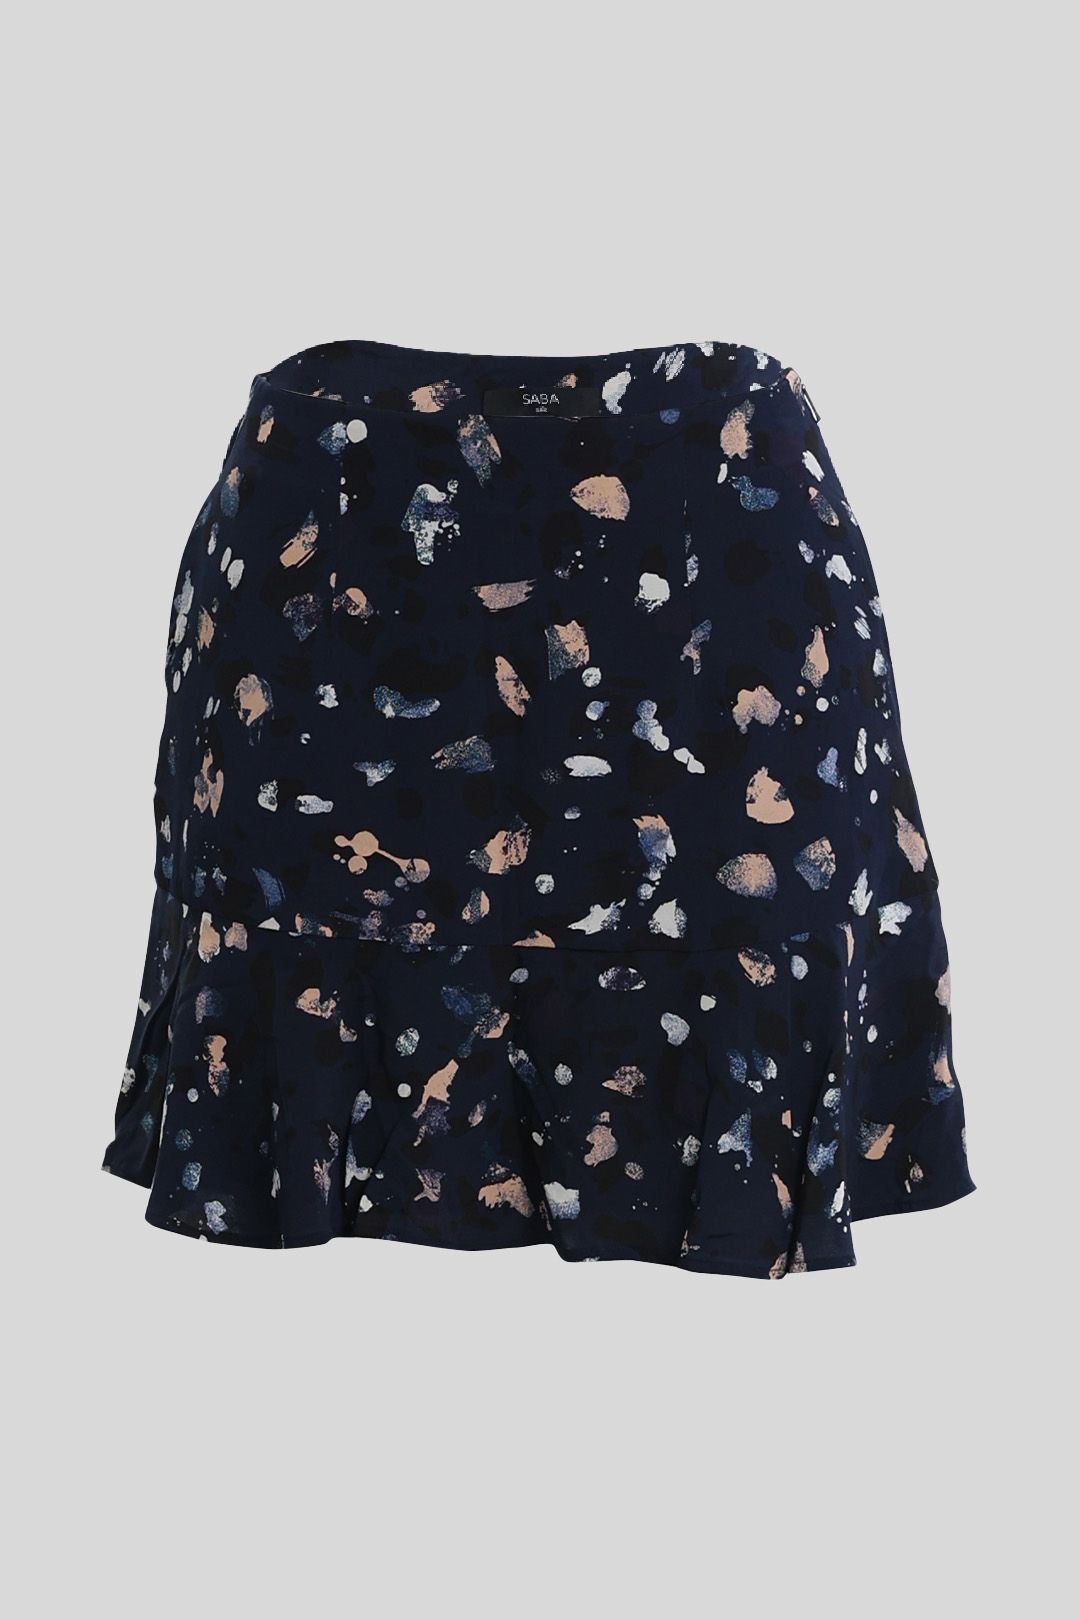 Saba - Silk Navy Mini Skirt